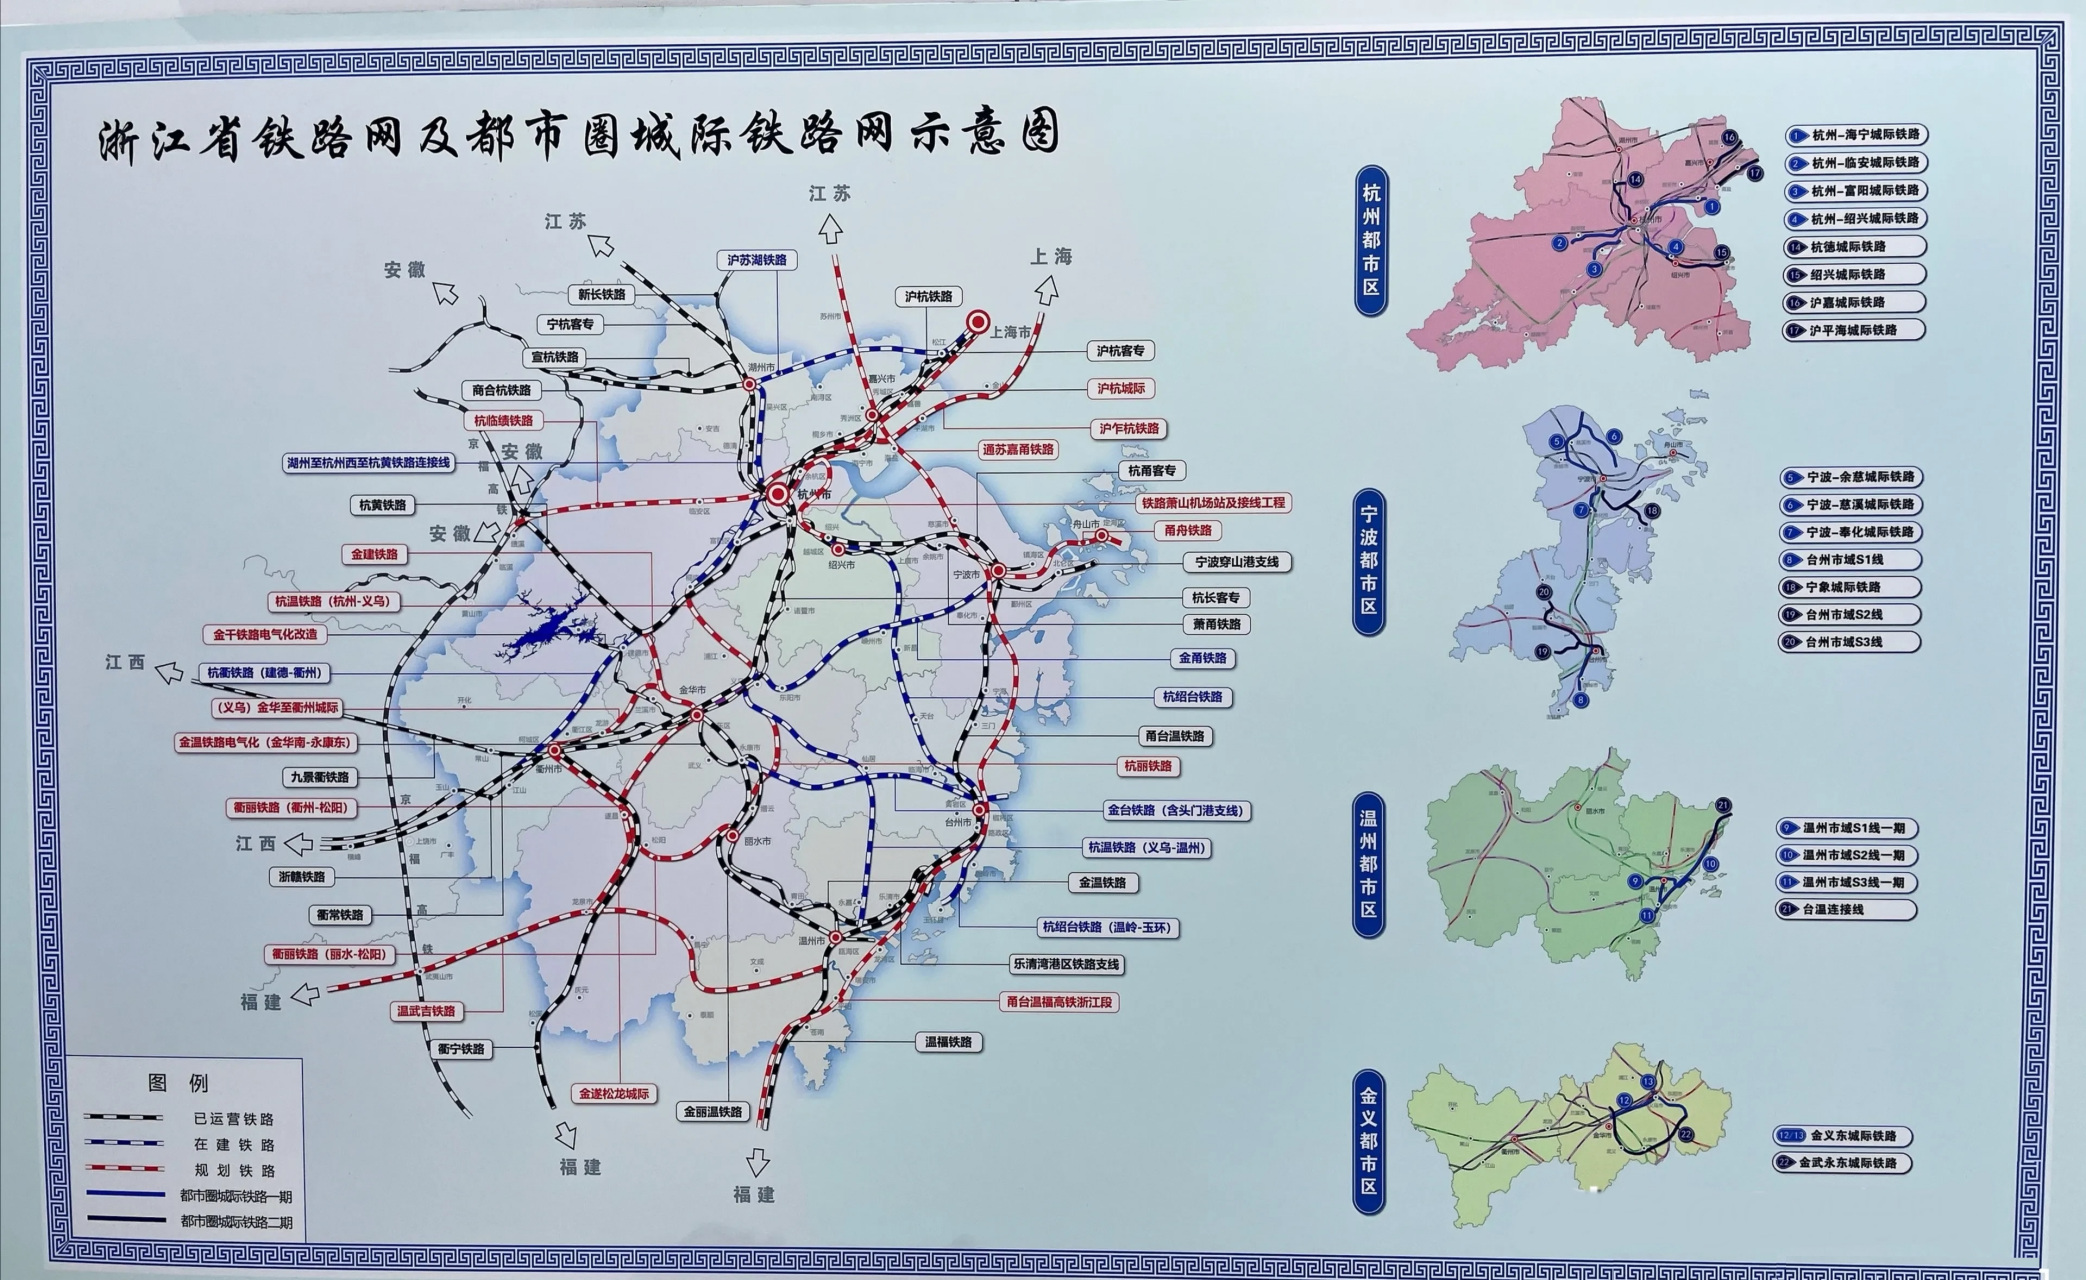 城市#《浙江省铁路网及都市圈城际铁路网示意图》超高清放送!